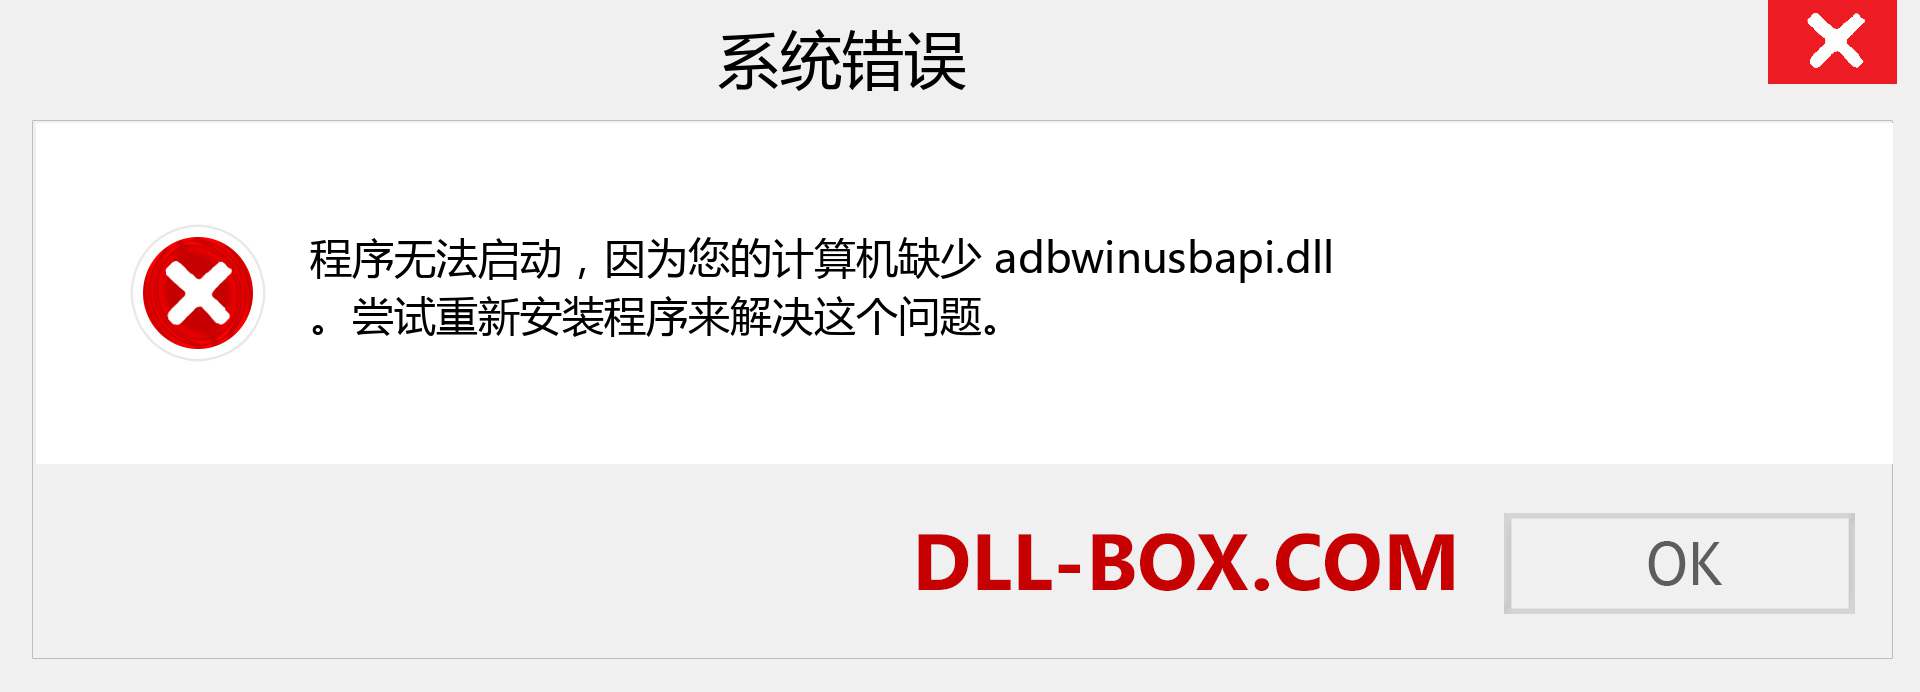 adbwinusbapi.dll 文件丢失？。 适用于 Windows 7、8、10 的下载 - 修复 Windows、照片、图像上的 adbwinusbapi dll 丢失错误